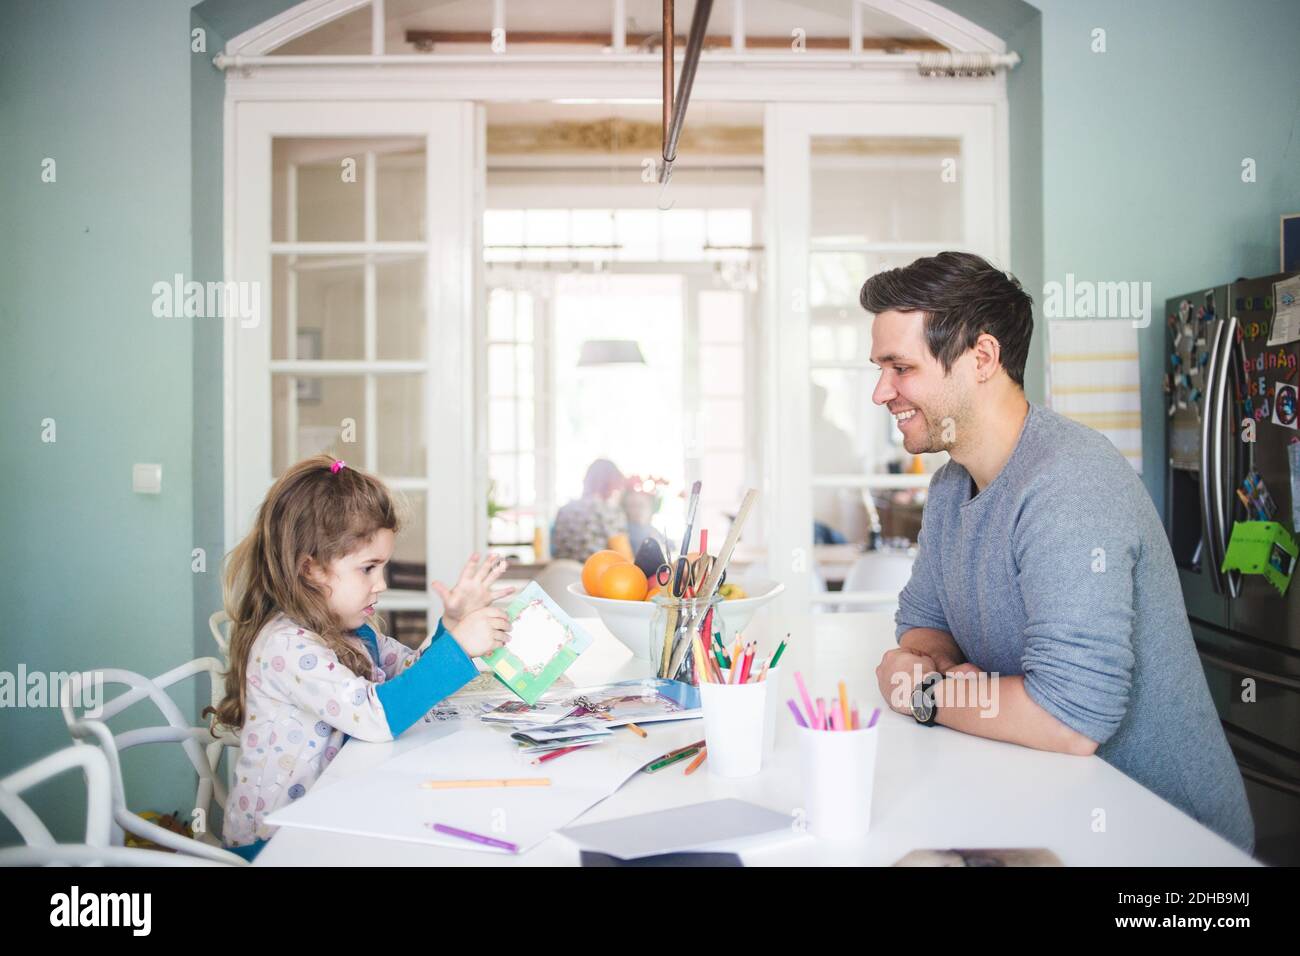 Padre sonriente mirando a la chica sosteniendo un libro de fotos en la cocina Foto de stock